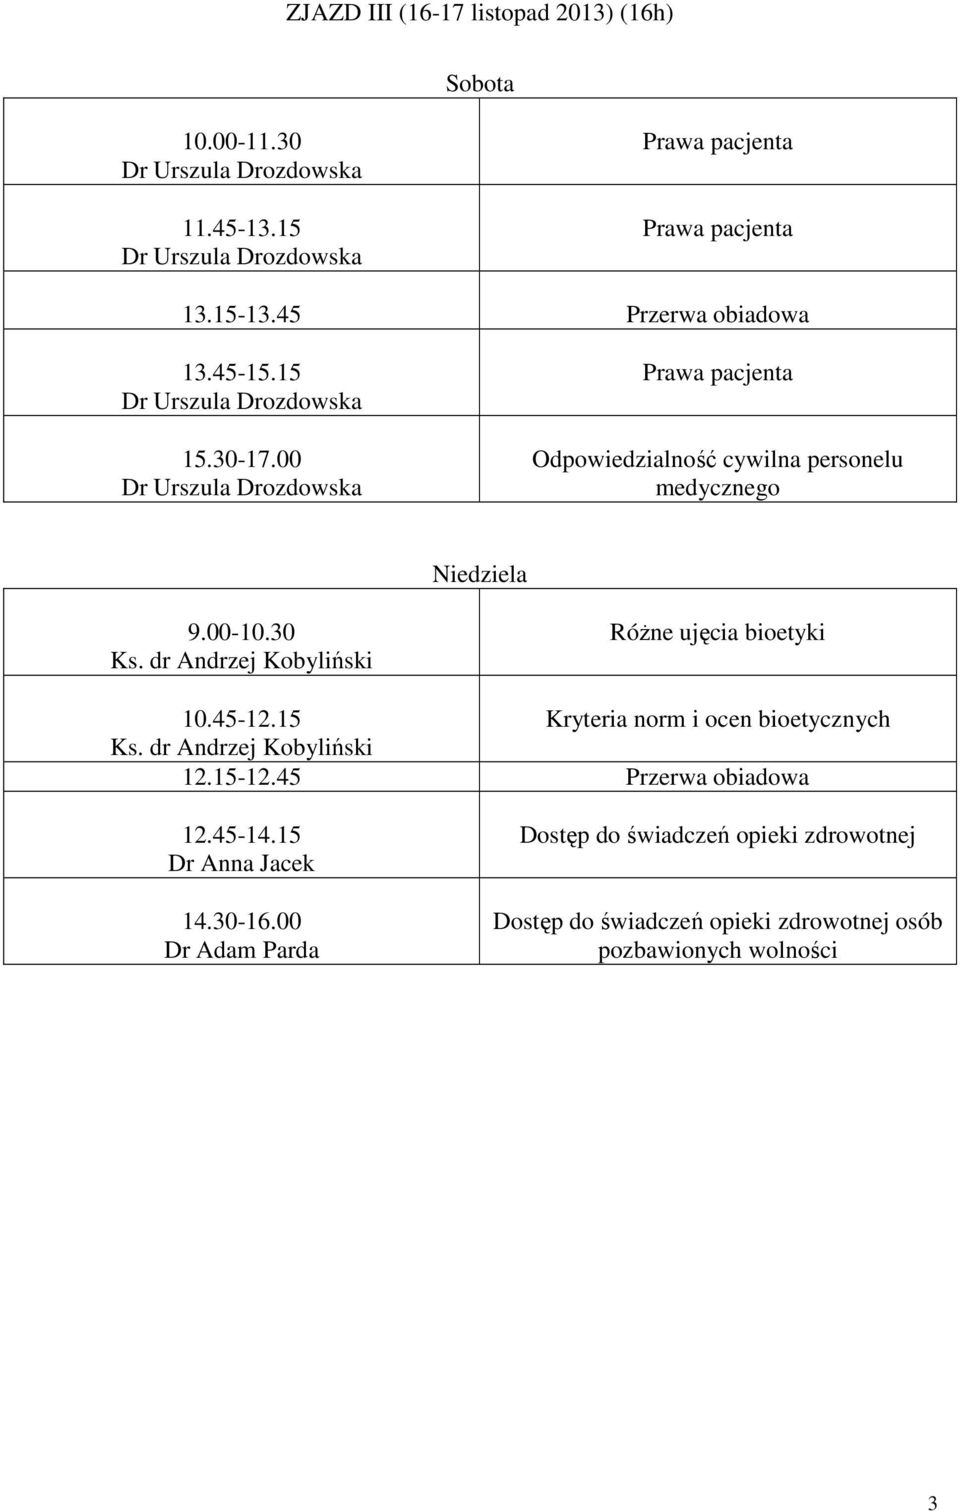 dr Andrzej Kobyliński Różne ujęcia bioetyki 10.45-12.15 Kryteria norm i ocen bioetycznych Ks. dr Andrzej Kobyliński 12.15-12.